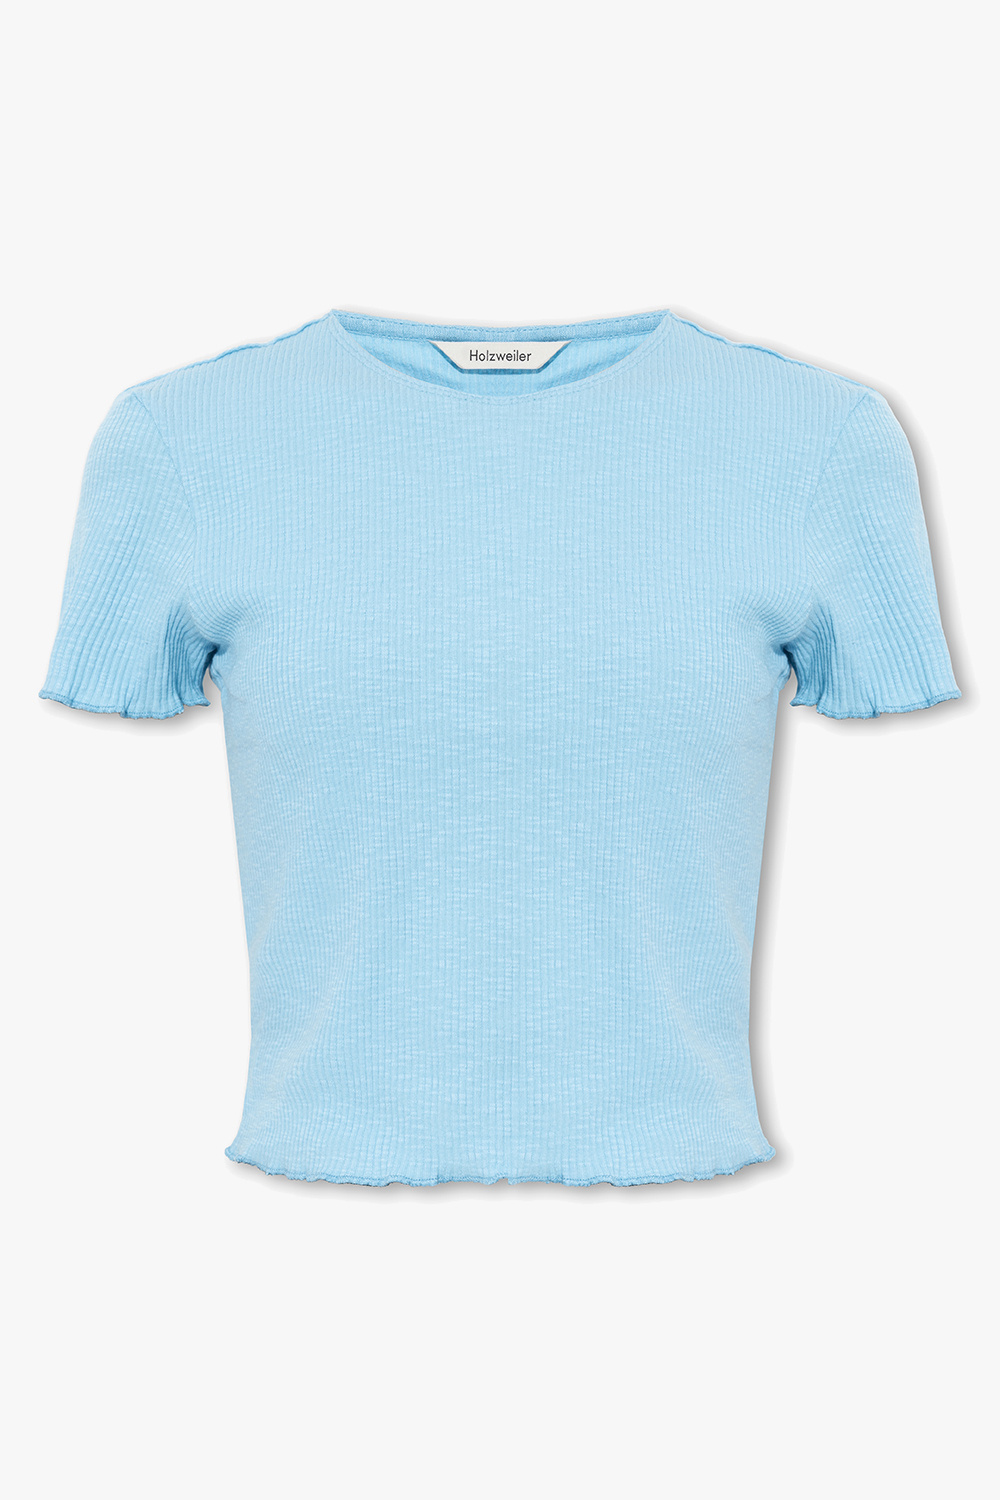 Light Holzweiler ab Extension-fmedShops b shirt SS - Wear T-shirt blue 102 tie-dye cropped Blau T - 12010477 - Sort \'Lego® Canada